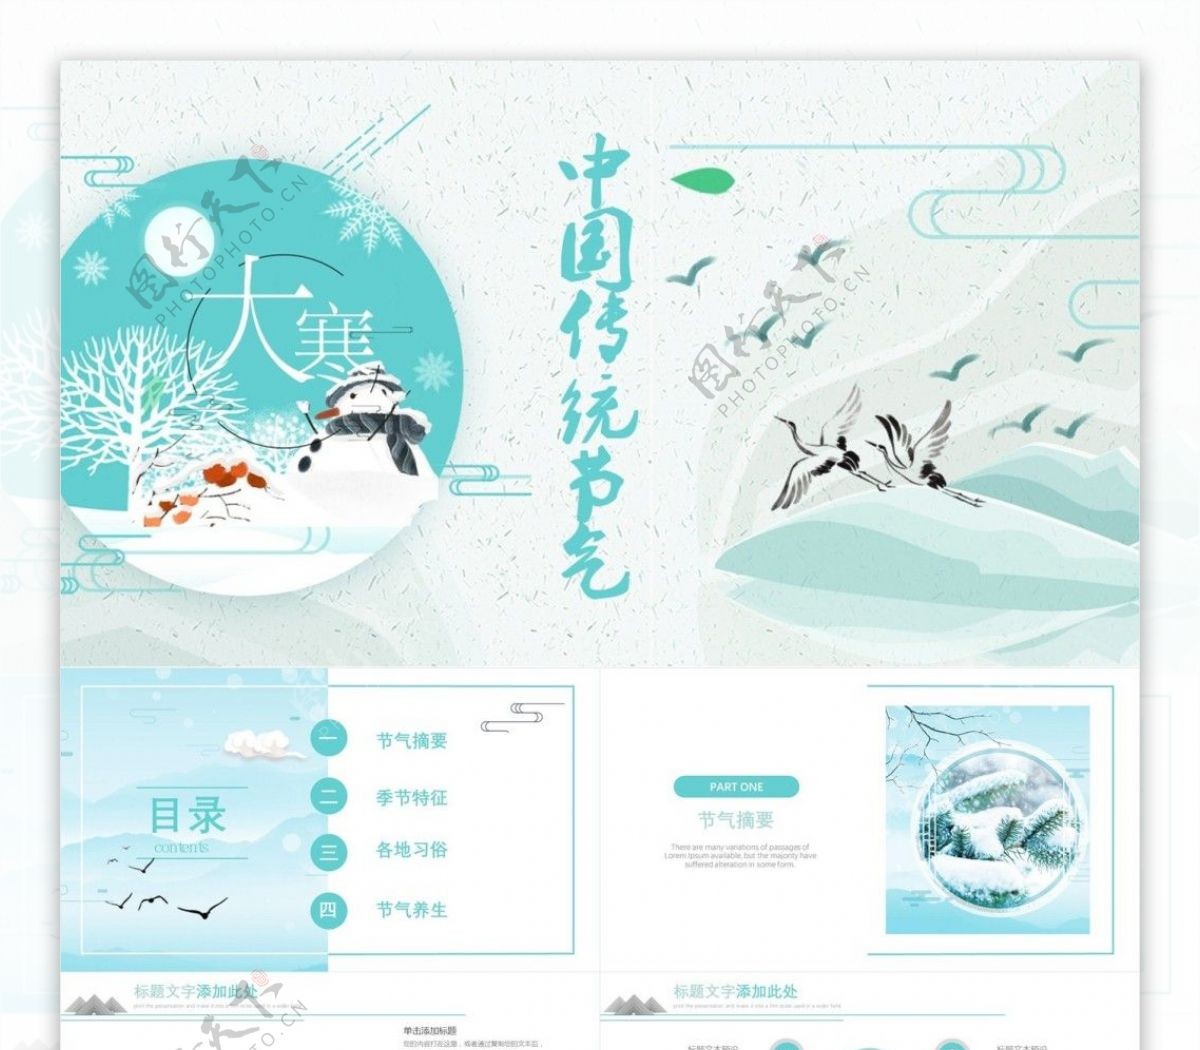 创意项目部中国传统节日节日庆典PPT模板